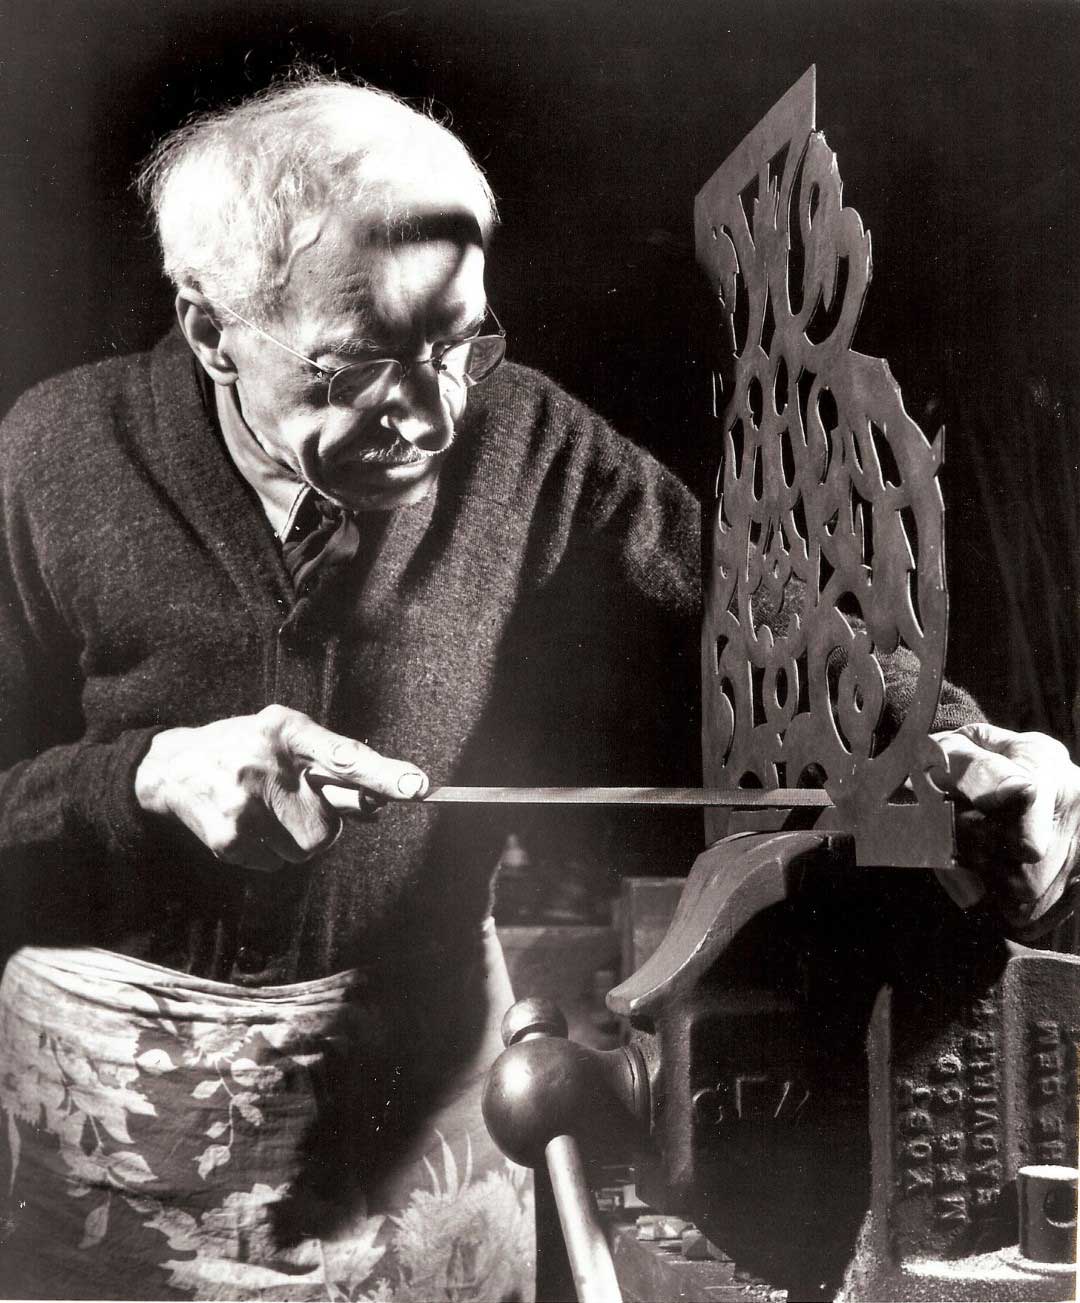 Rojstni kraj Cirila Čolnika (1871 - 1958), slovenskega kovača in enega največjih mojstrov umetnega kovaštva v ZDA na Drvanji pri Benediktu